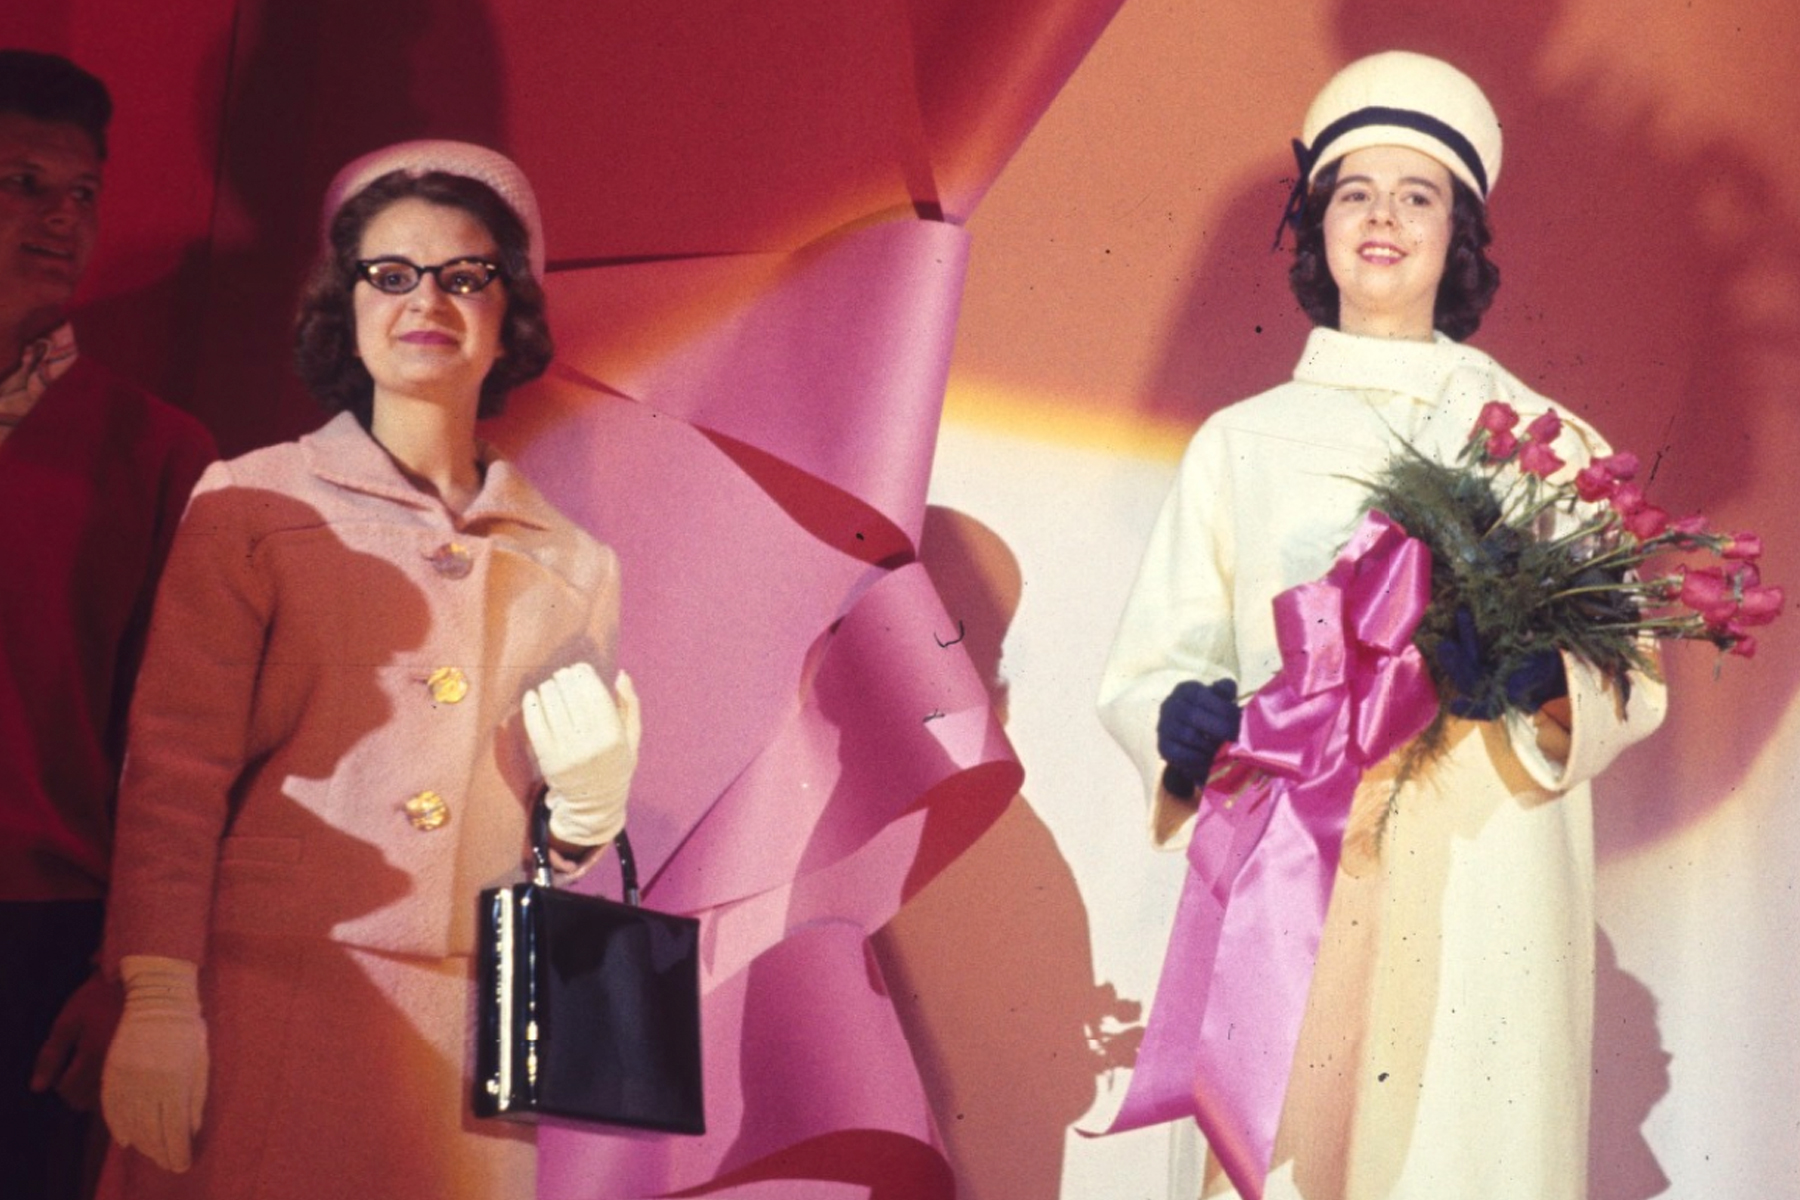 Two women in a sixties era fashion show.